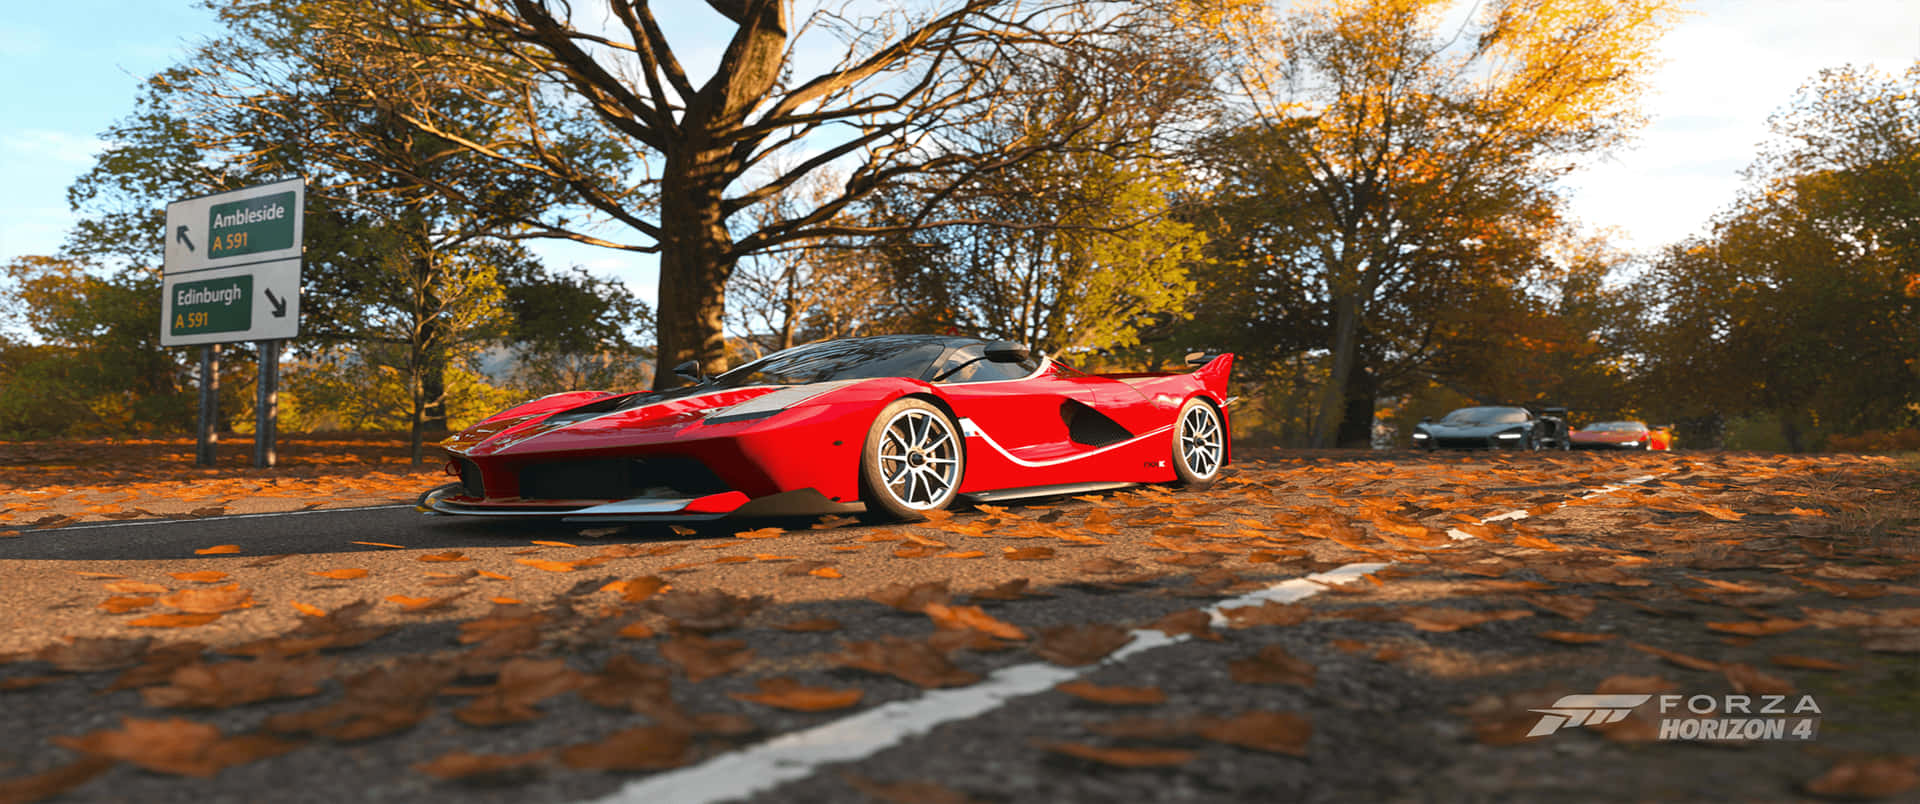 Fondode Pantalla De Ferrari Fxx K Forza Horizon 4 En Resolución 3440x1440p.